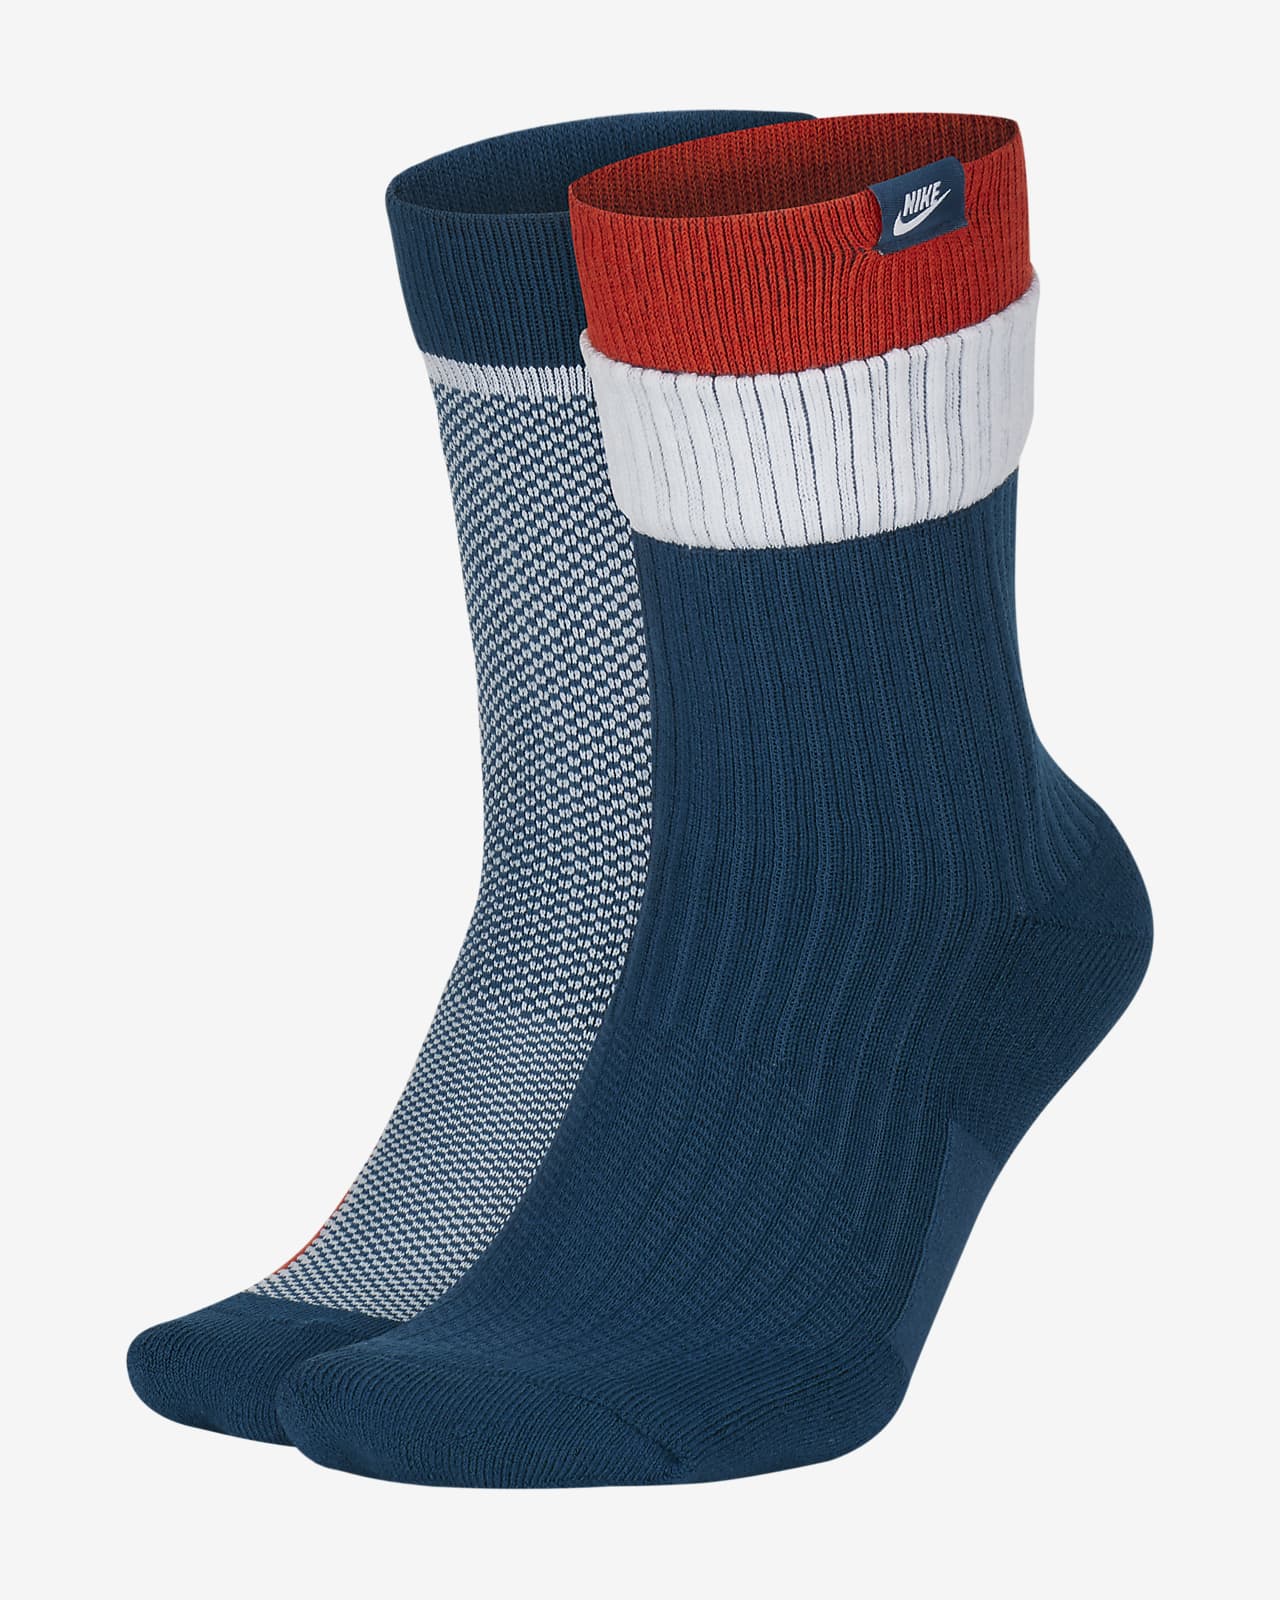 Nike SNKR Sox Multi-Height Socks (2 